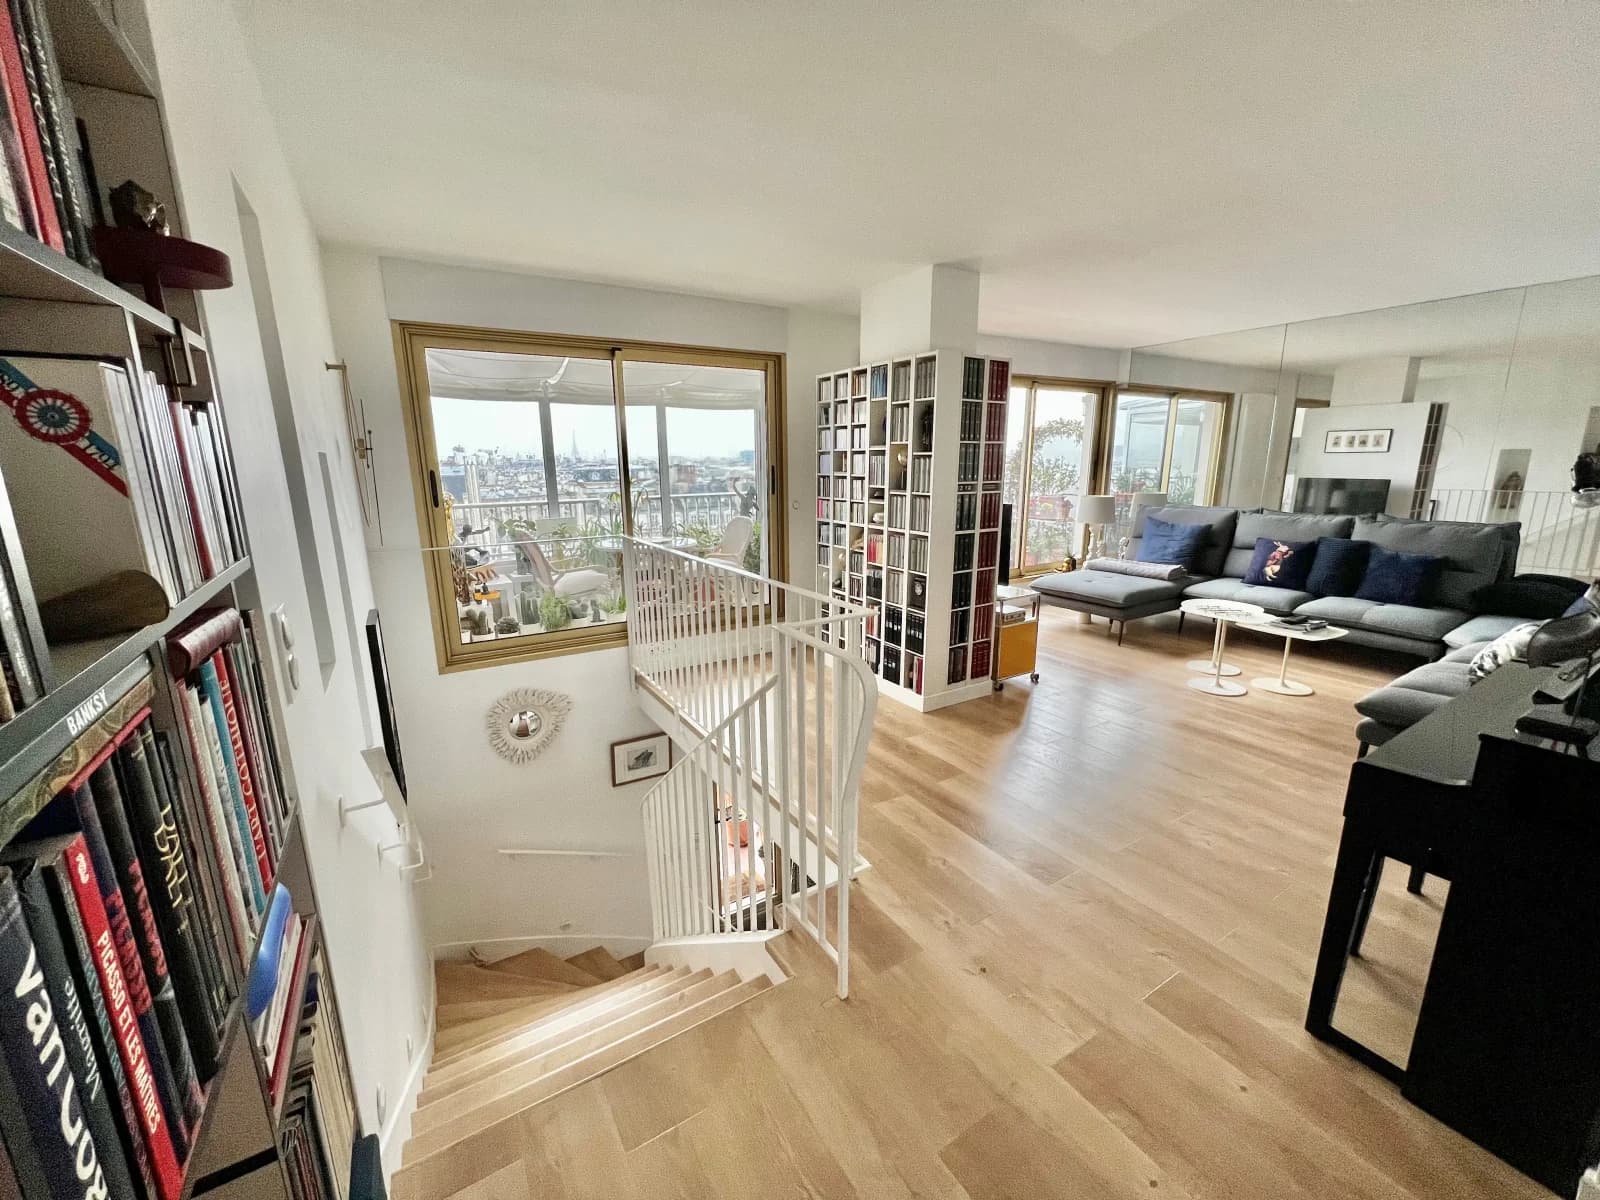 Espace Duplex terrasse avec vue panoramique sur Paris - 1